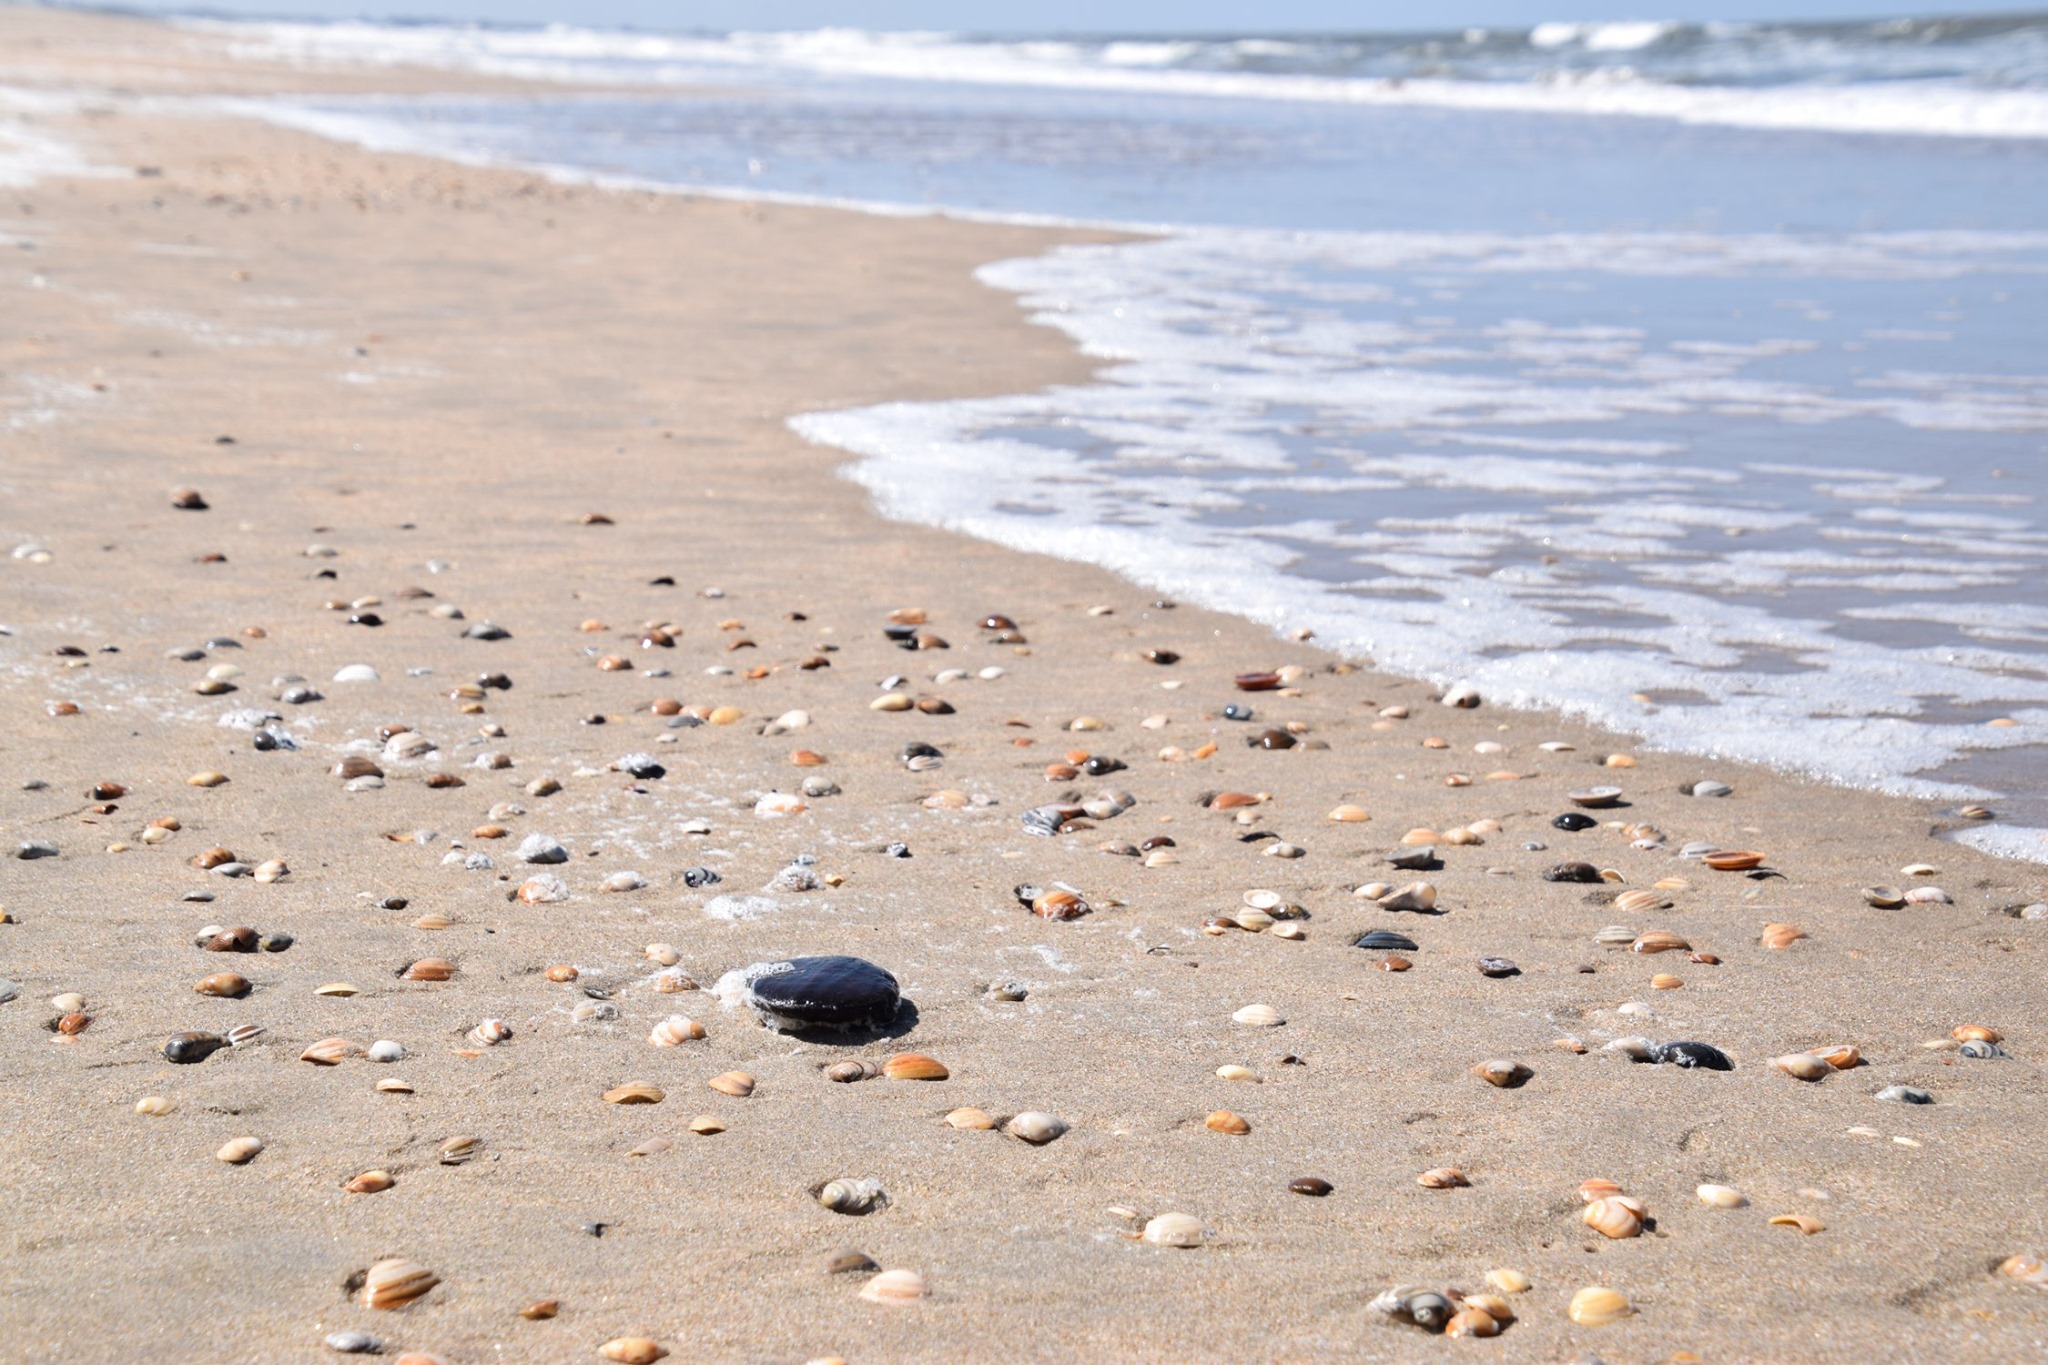 Strandwandelexcursie “Is het strand meer dan een bak zand?”.